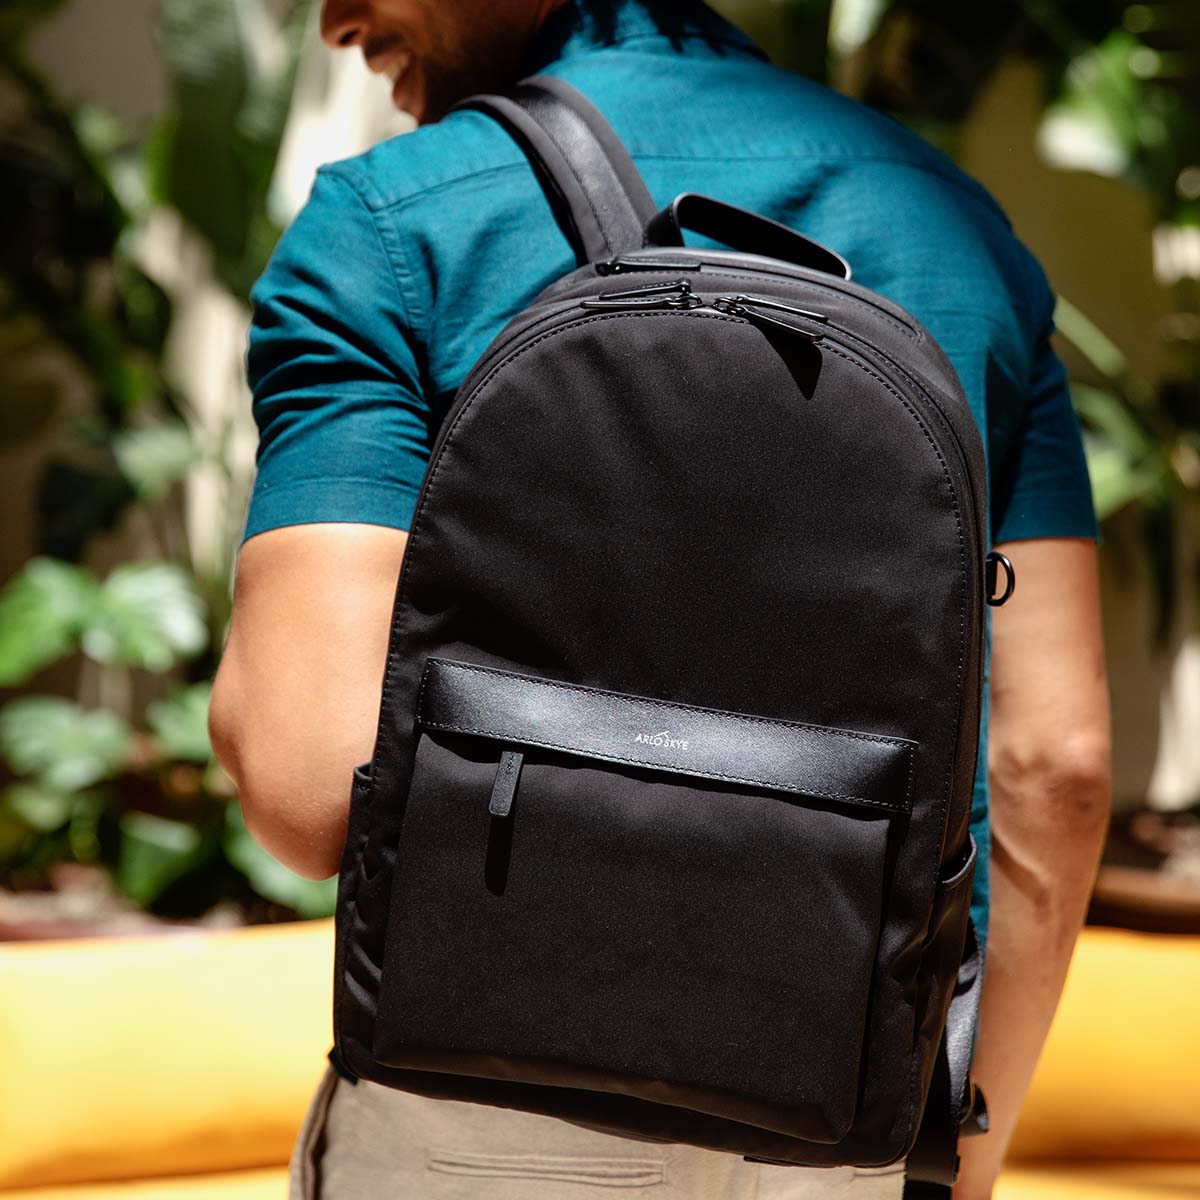 black backpack on shoulder of man